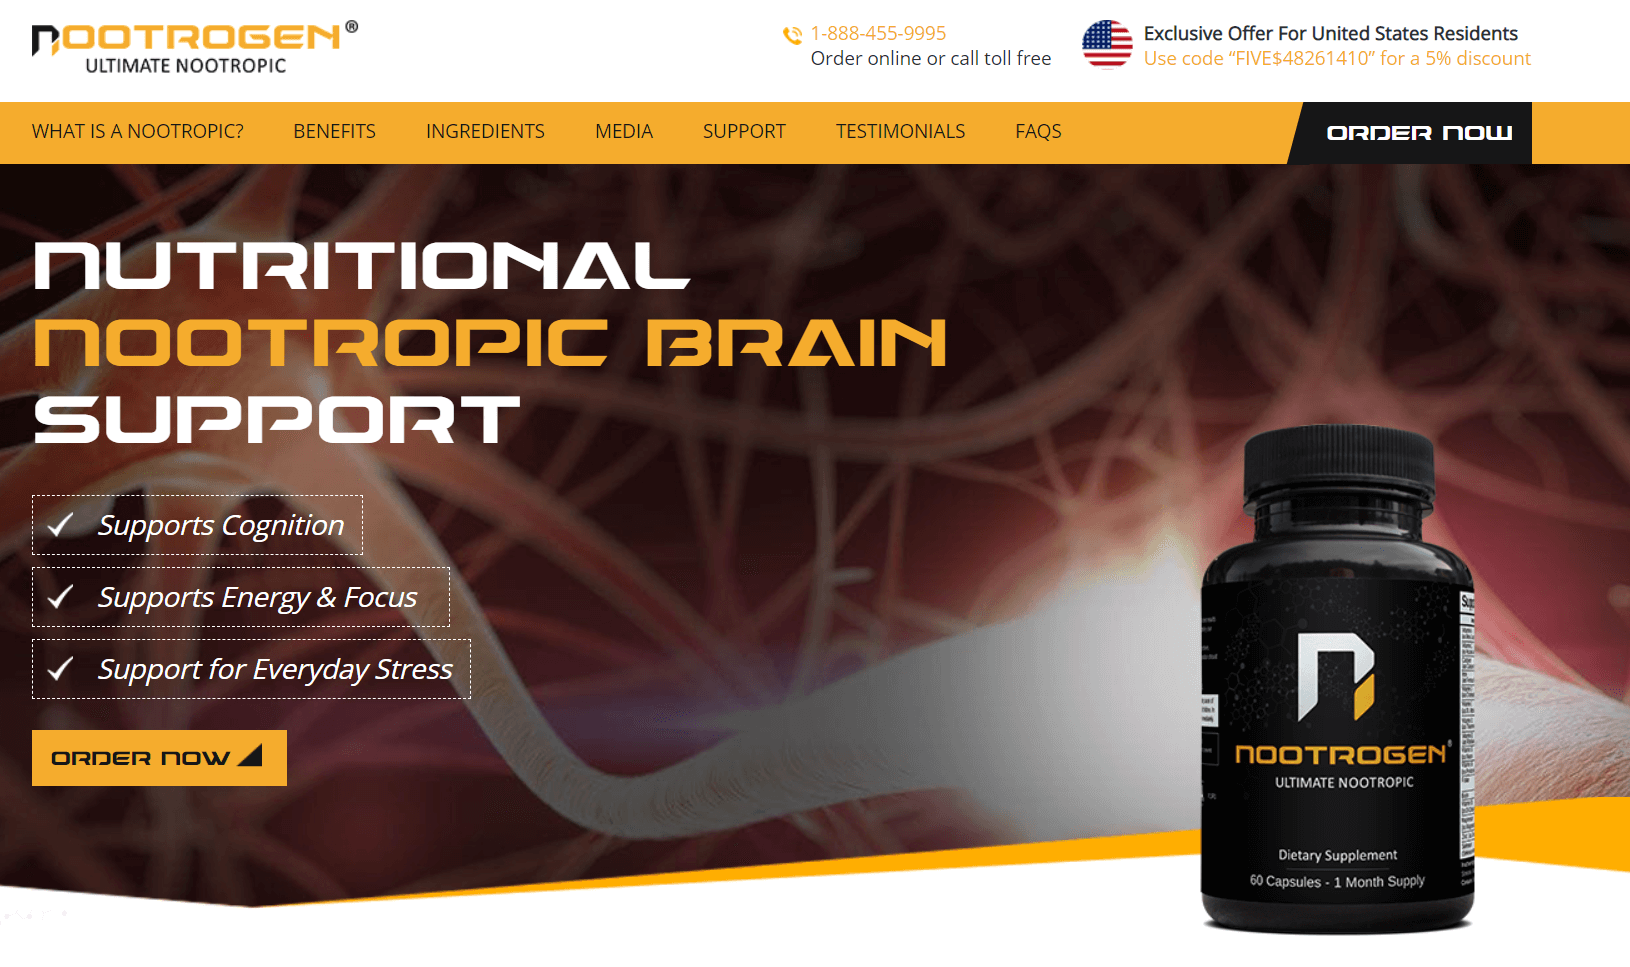 Nootrogen Website Screenshot